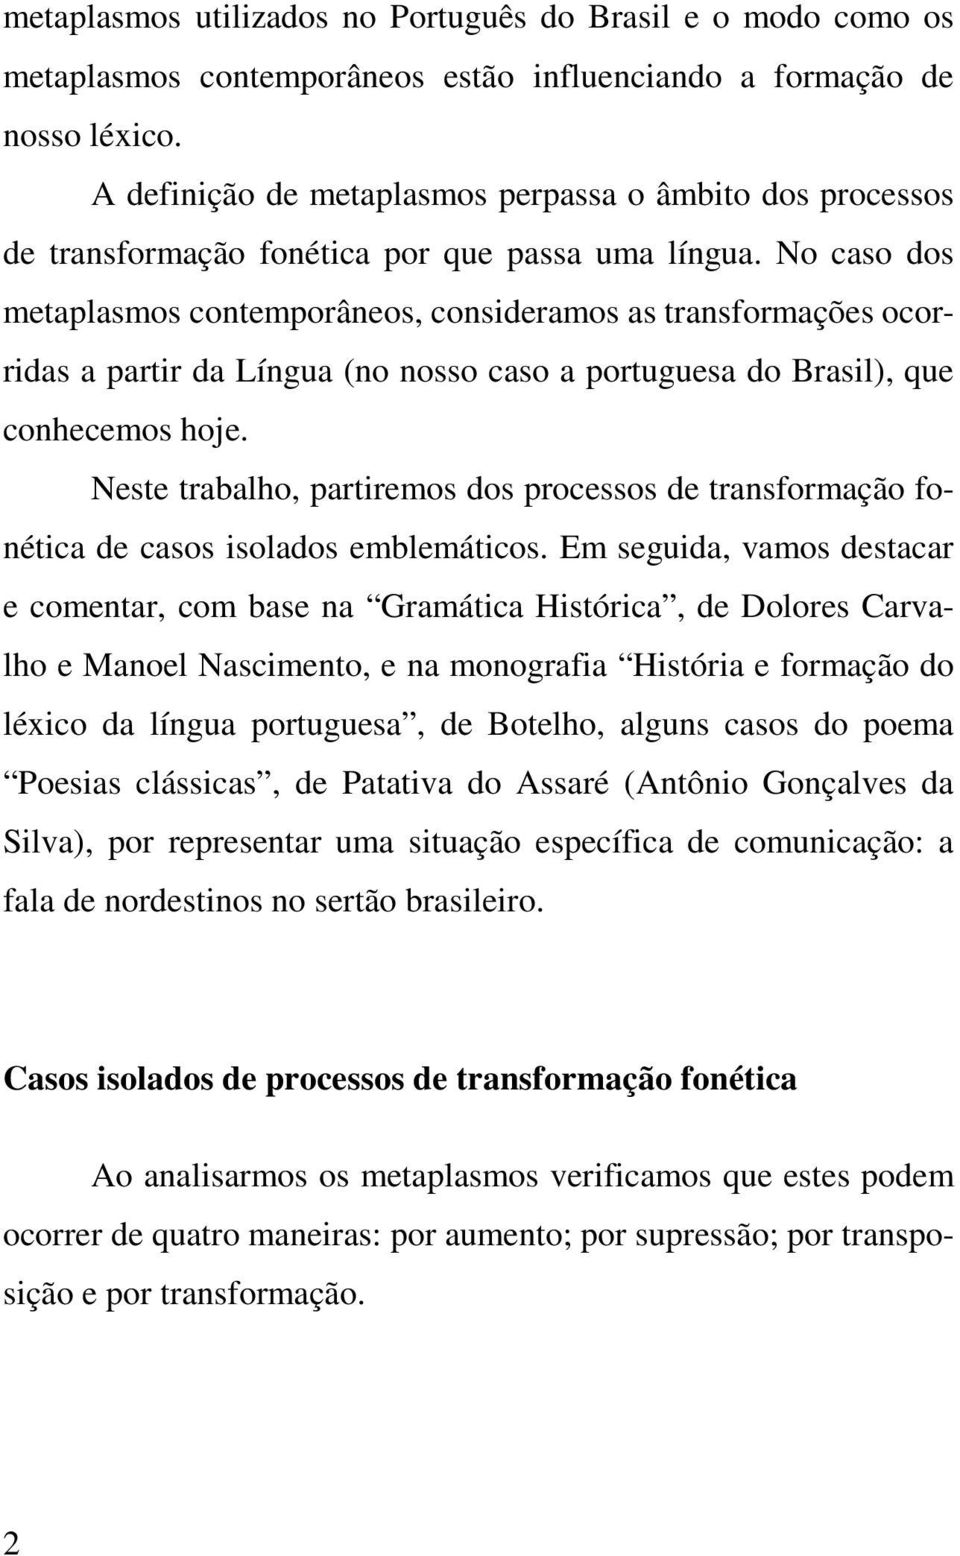 No caso dos metaplasmos contemporâneos, consideramos as transformações ocorridas a partir da Língua (no nosso caso a portuguesa do Brasil), que conhecemos hoje.